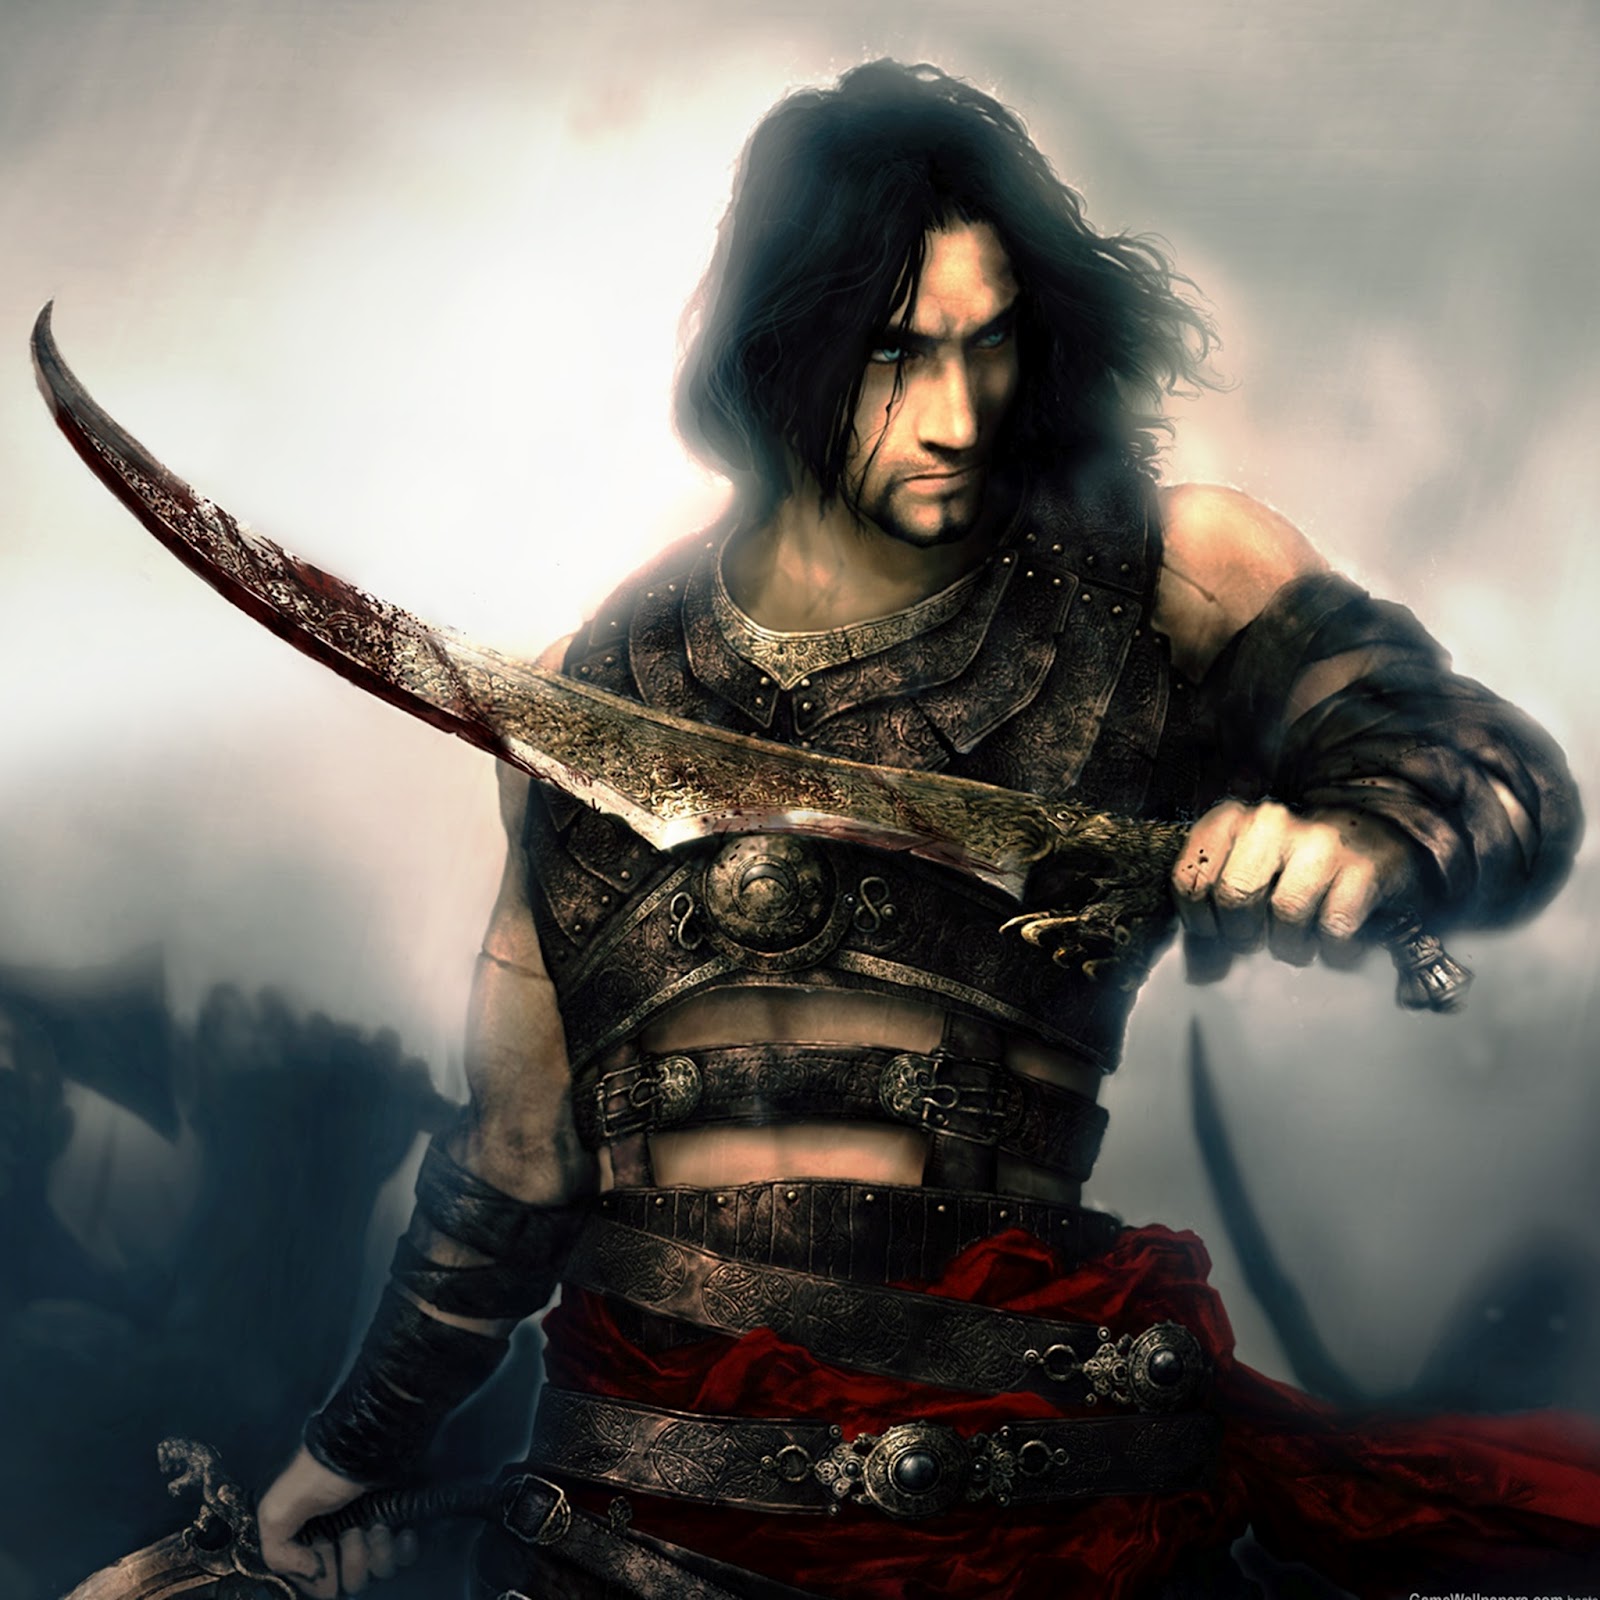 prince of persia wallpaper,cg artwork,black hair,fictional character,illustration,samurai